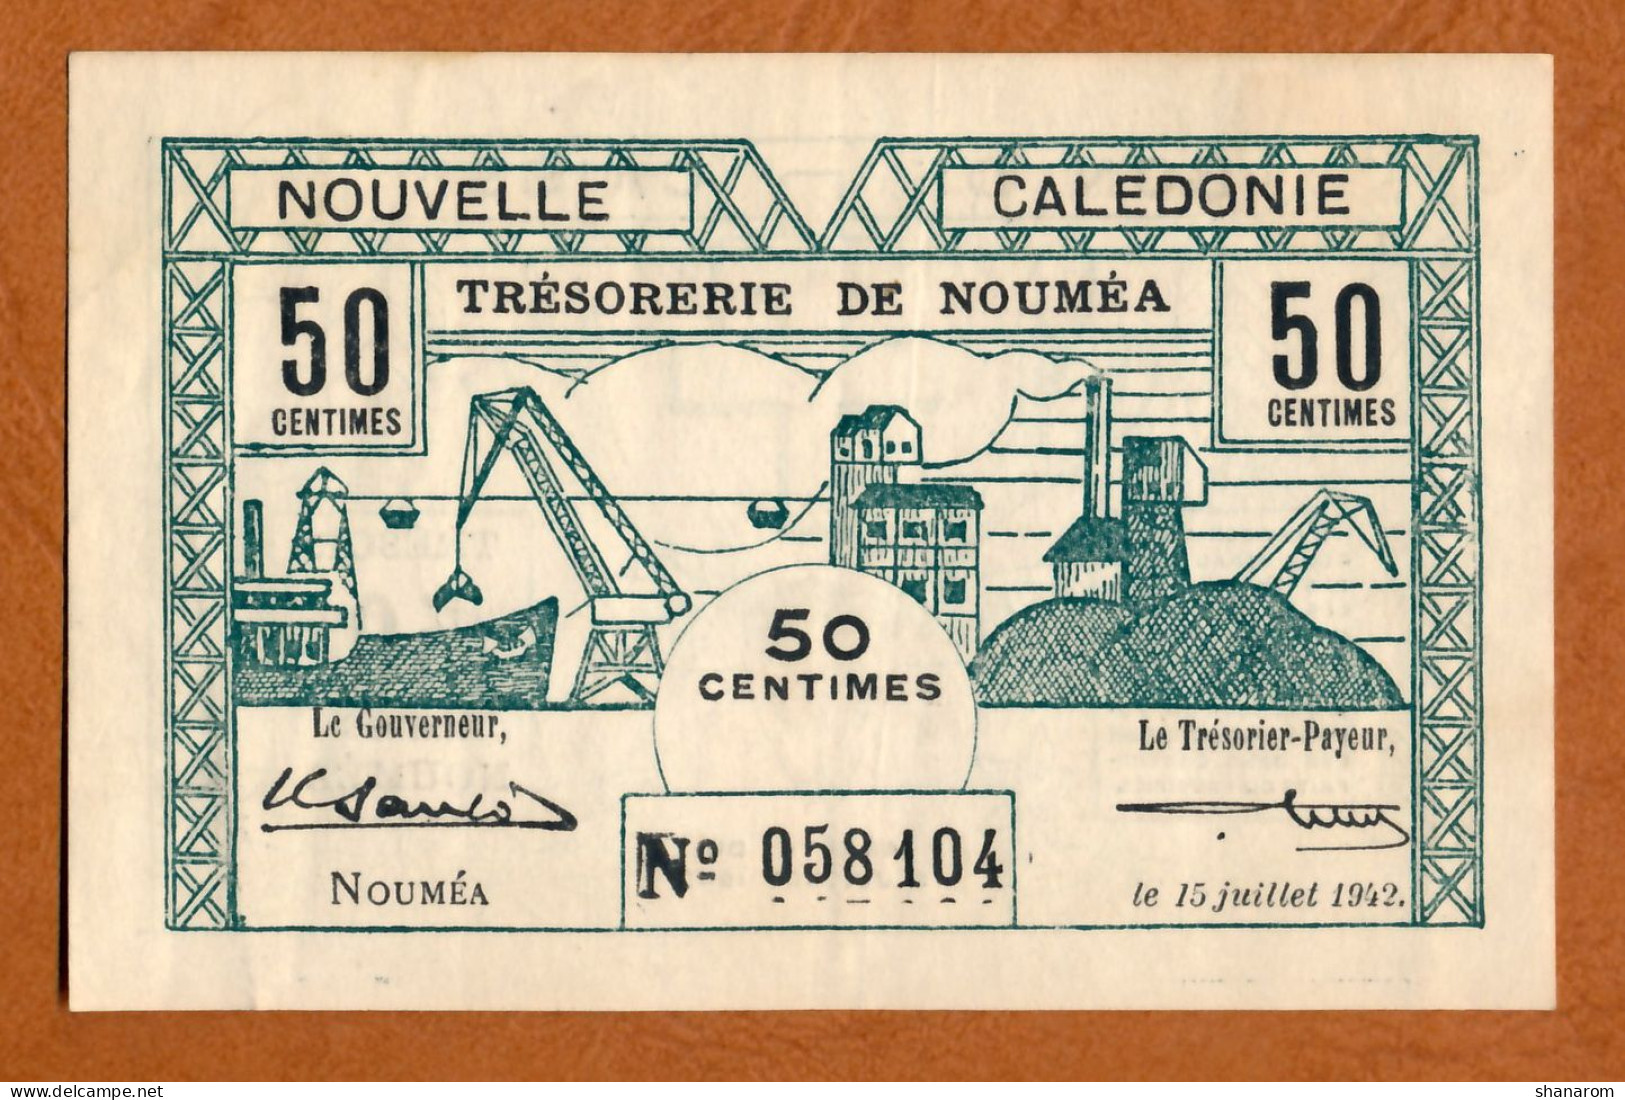 1942 // NOUVELLE CALEDONIE // TRESORERIE DE NOUMEA // JUILLET 1942 // Cinquante Centimes // VF-TTB - Nouvelle-Calédonie 1873-1985